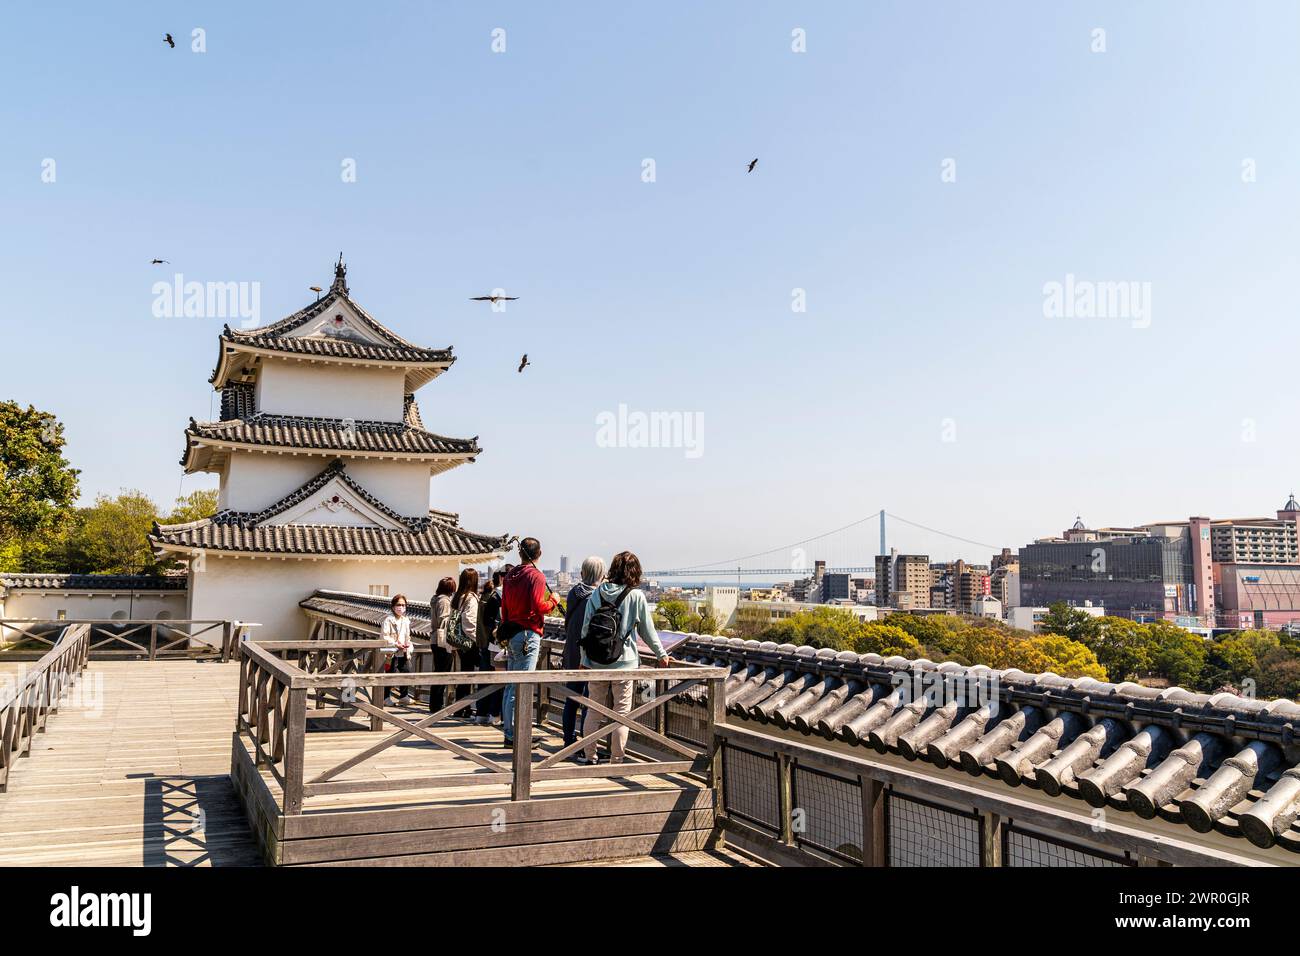 Les gens debout sur un point élevé sur les murs du château d'Akashi regardant les cerfs-volants volant autour du yagura de Tatsumi, tourelle dans le soleil de printemps Banque D'Images